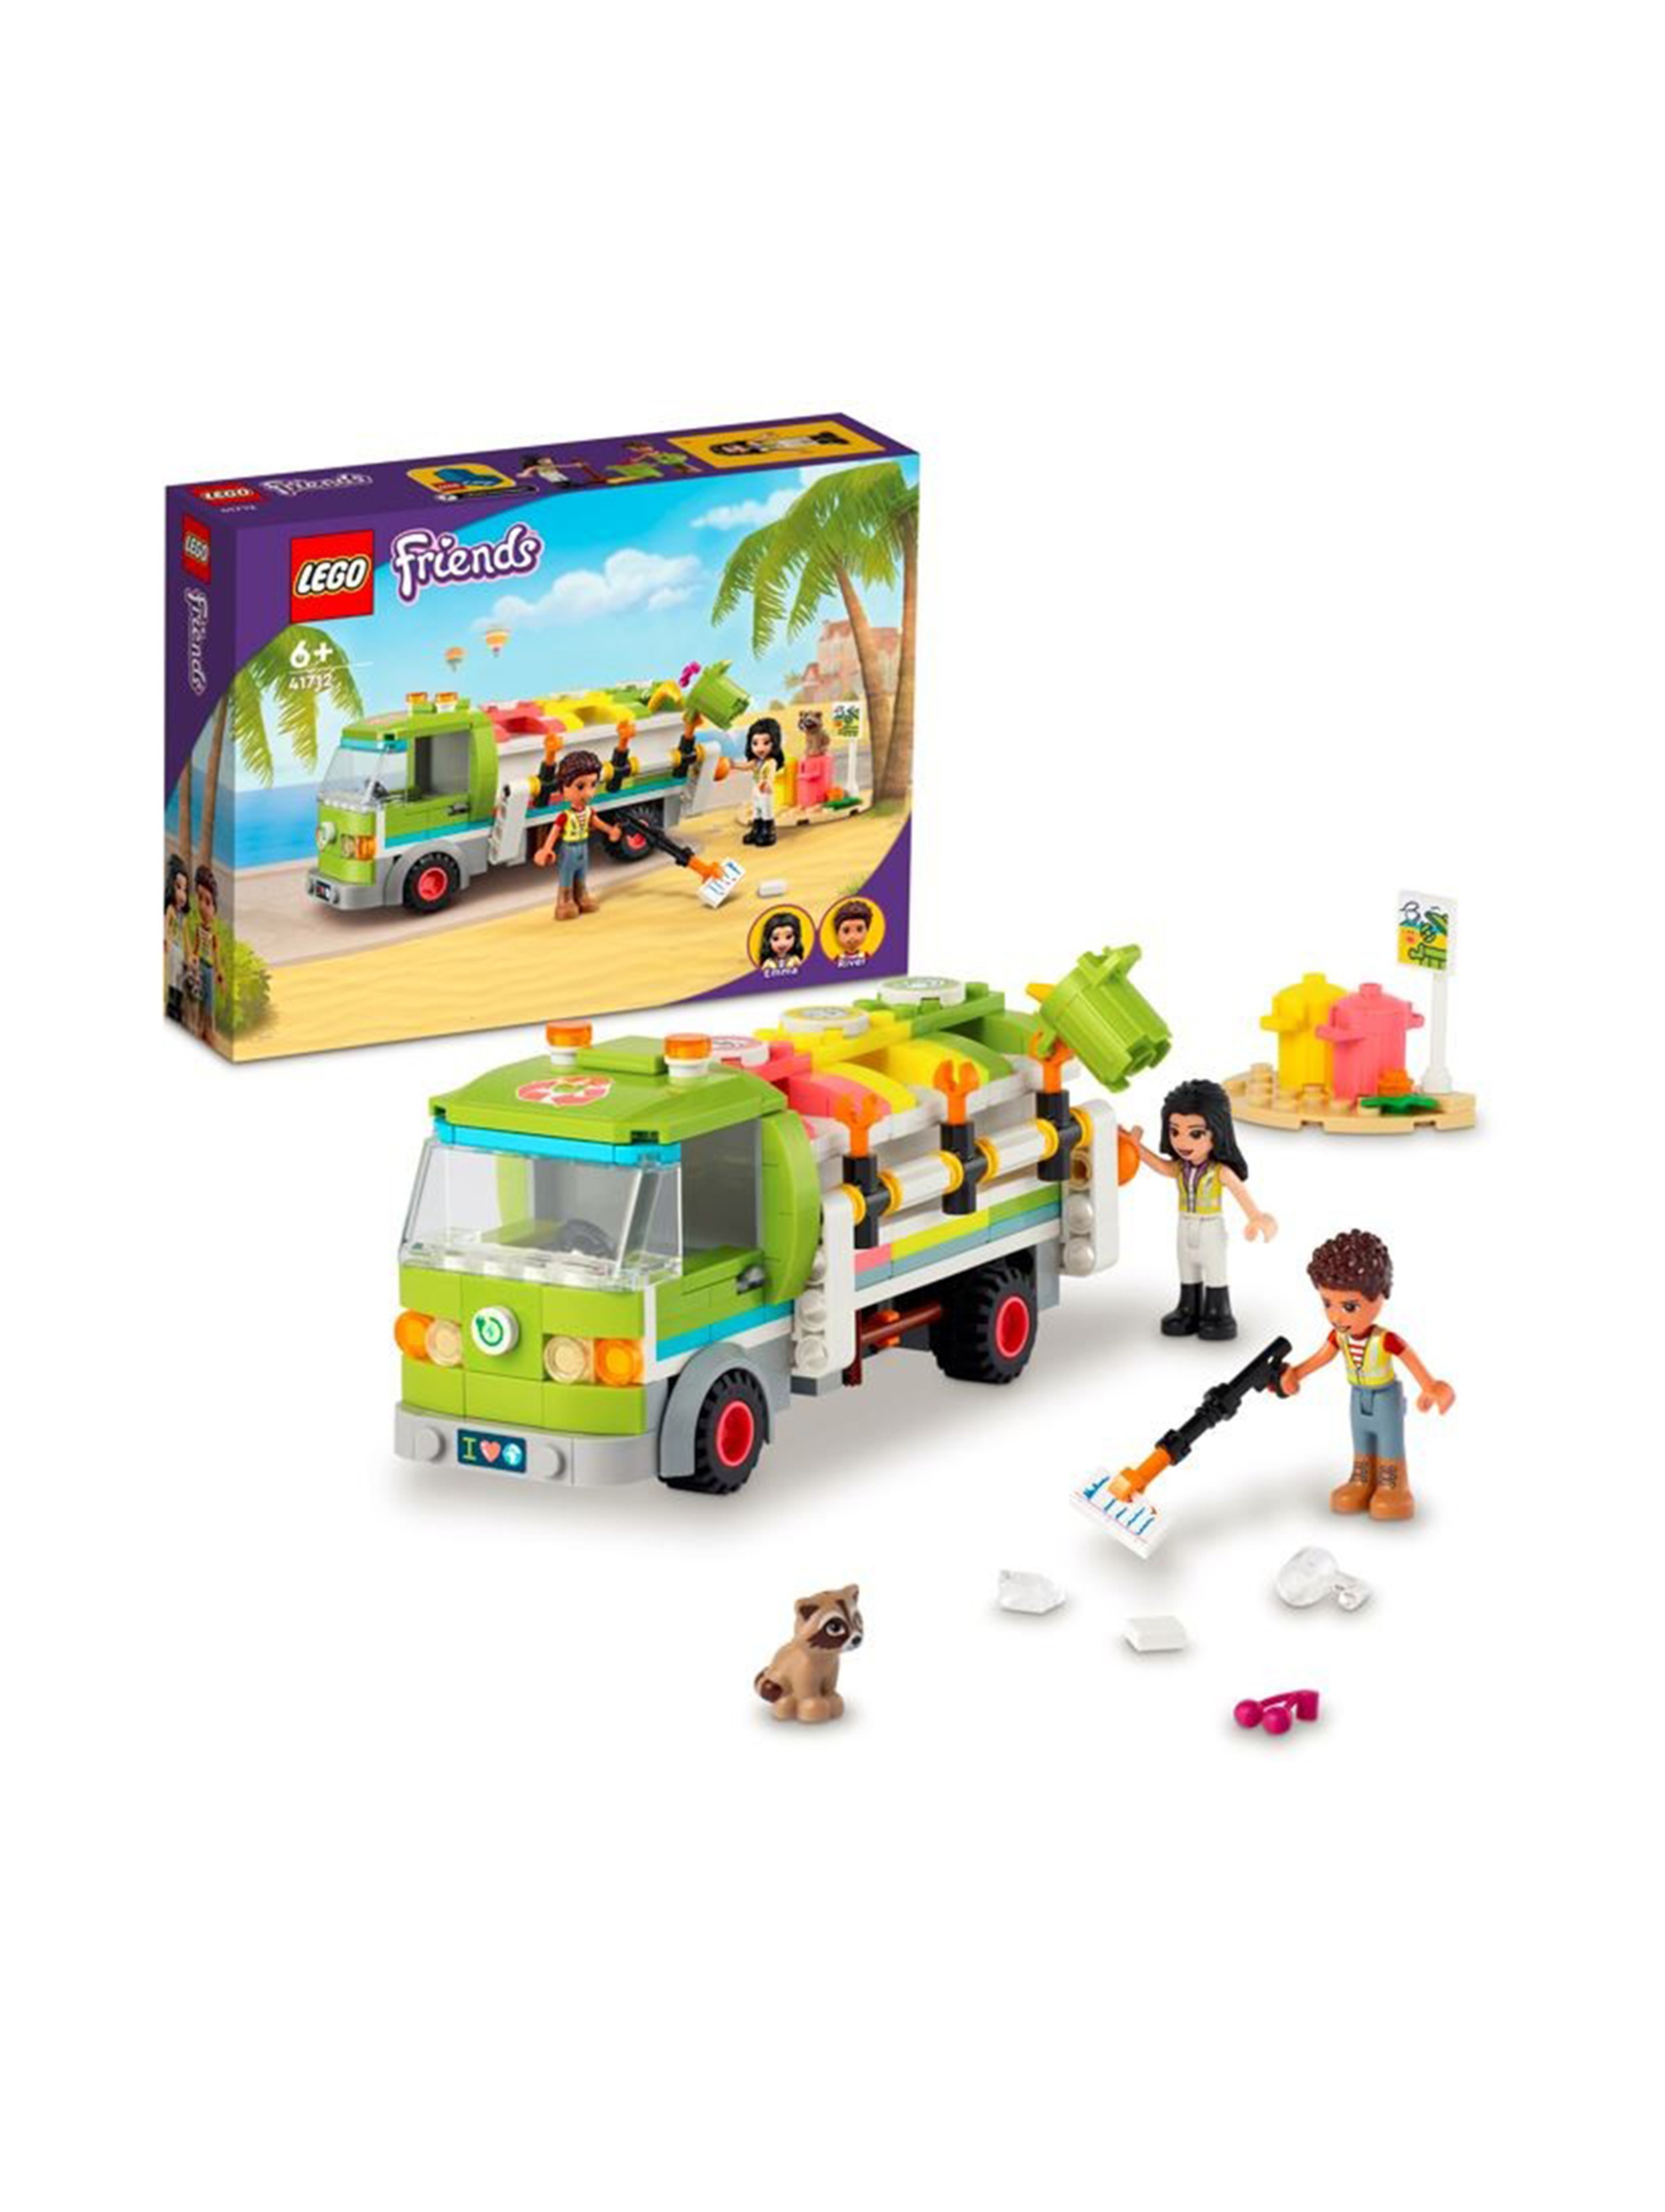 LEGO Friends - Ciężarówka recyklingowa 41712 - 259 elementów, wiek 6+